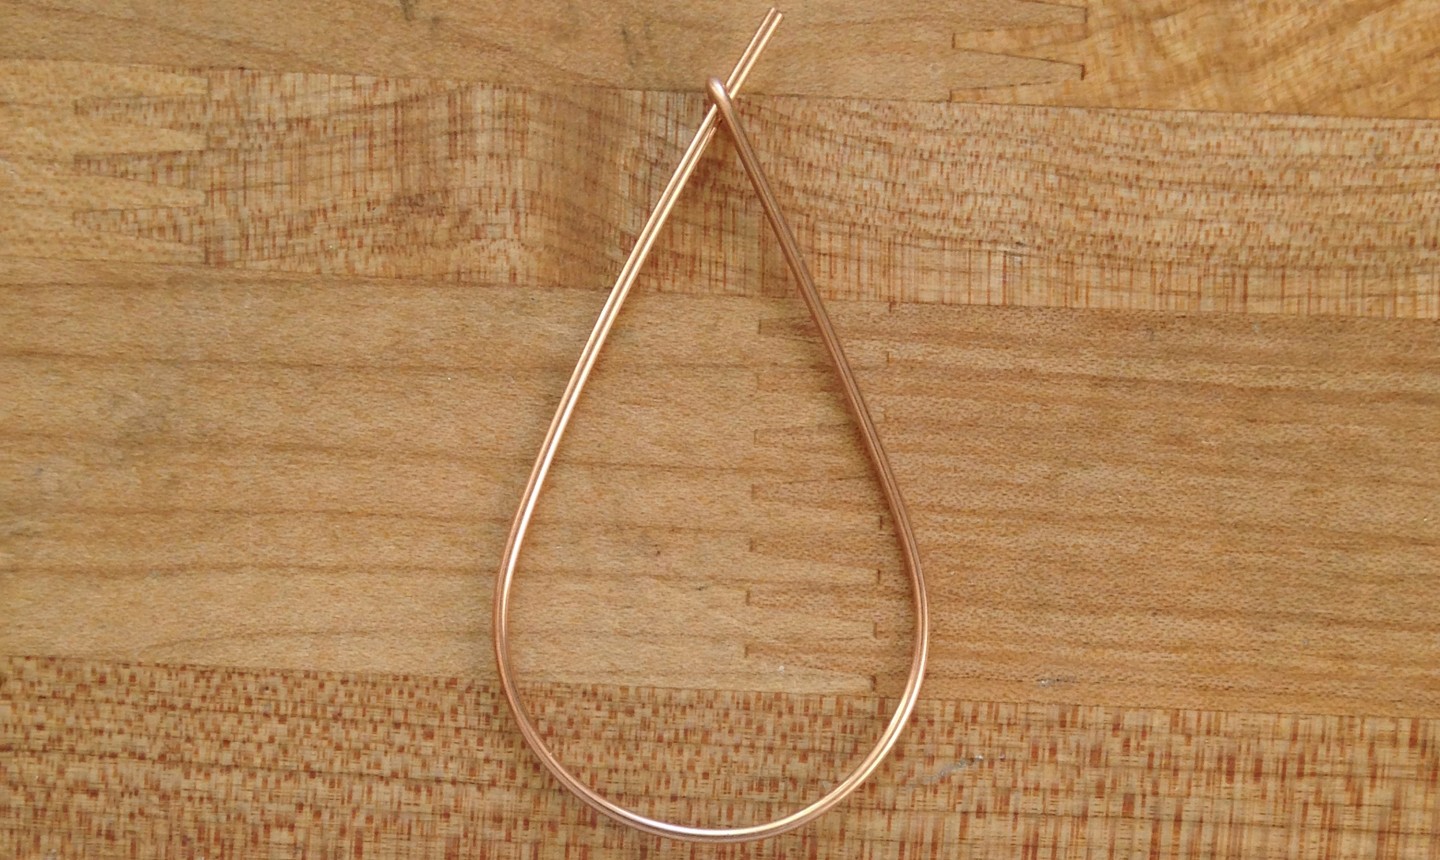 shaped earring wire for hoop earring